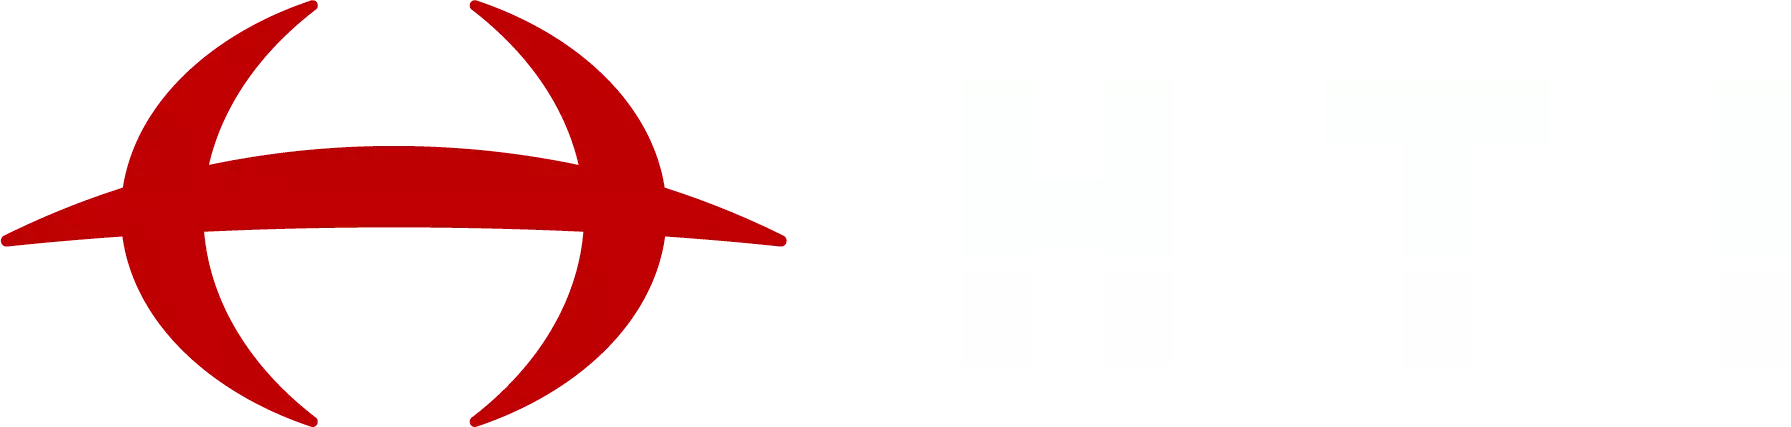 Hydraulics Technology, Inc. logo